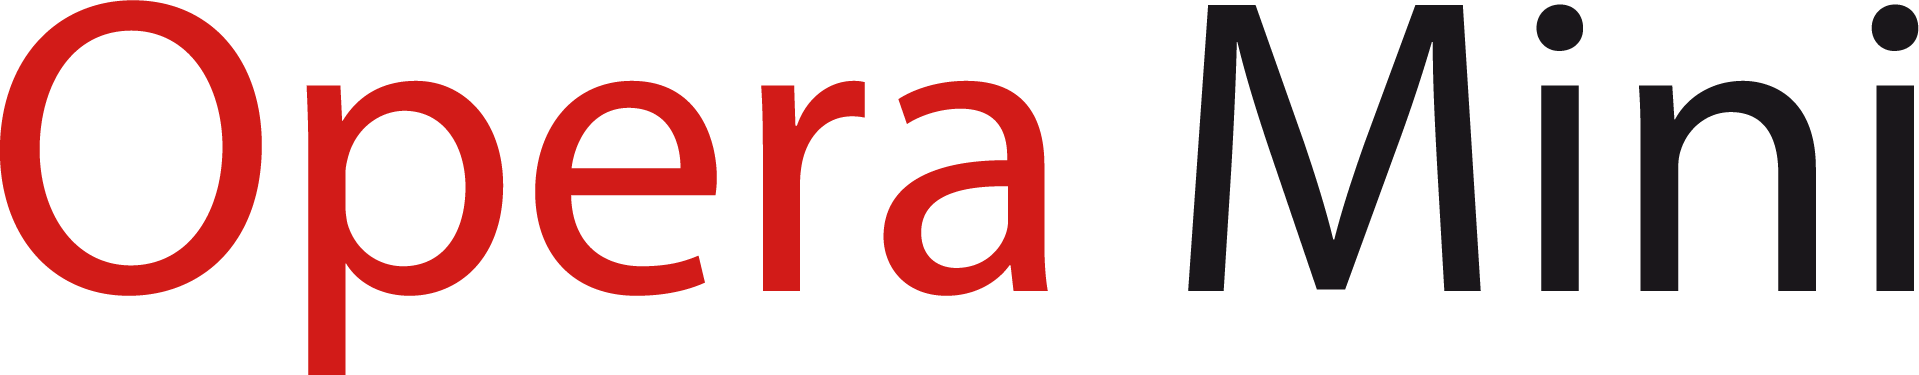 Opera All Logo - File:Opera Mini logo.png - Wikimedia Commons